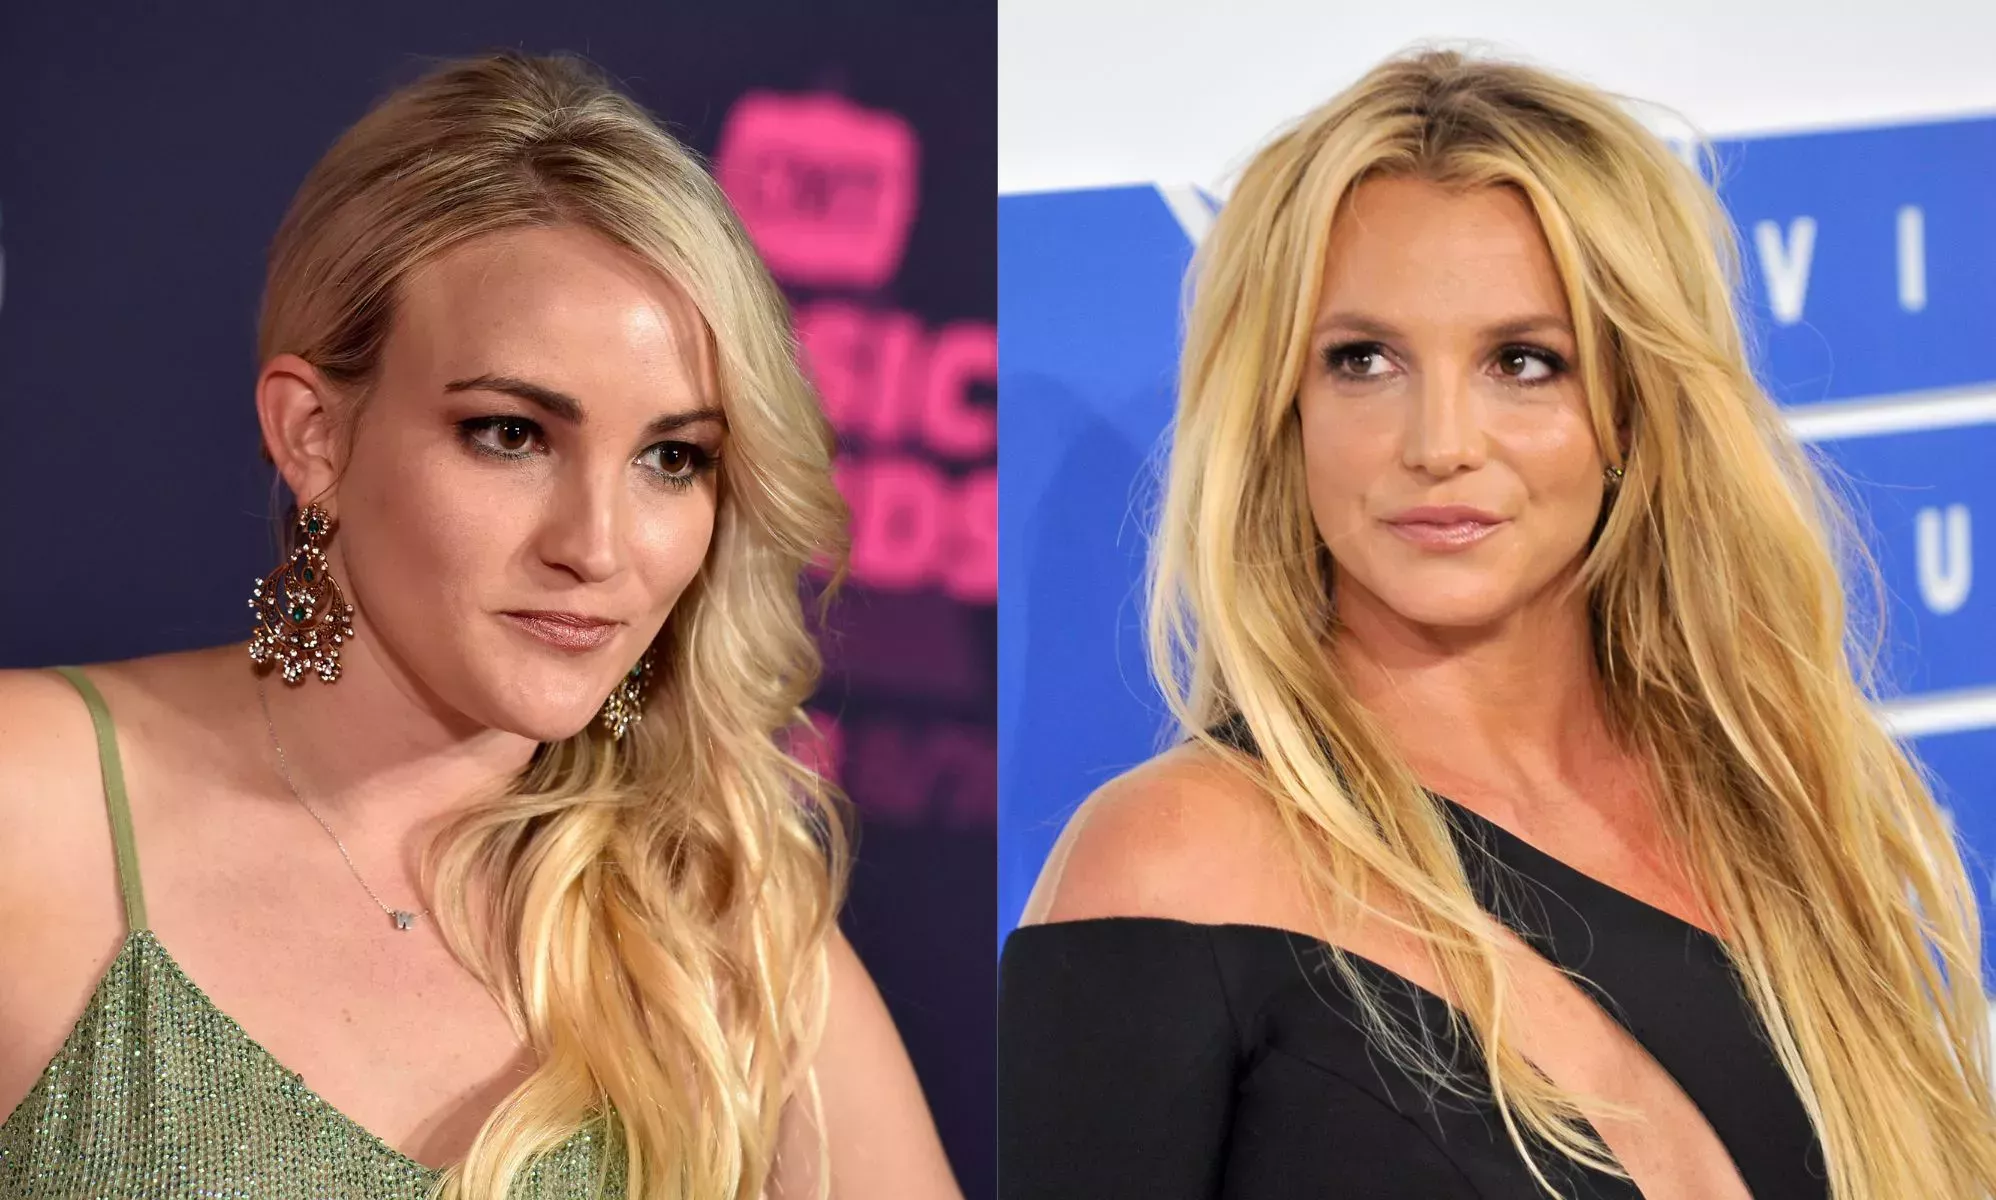 ¿Por qué se pelearon Jamie Lynn Spears y Britney Spears en I'm A Celeb?